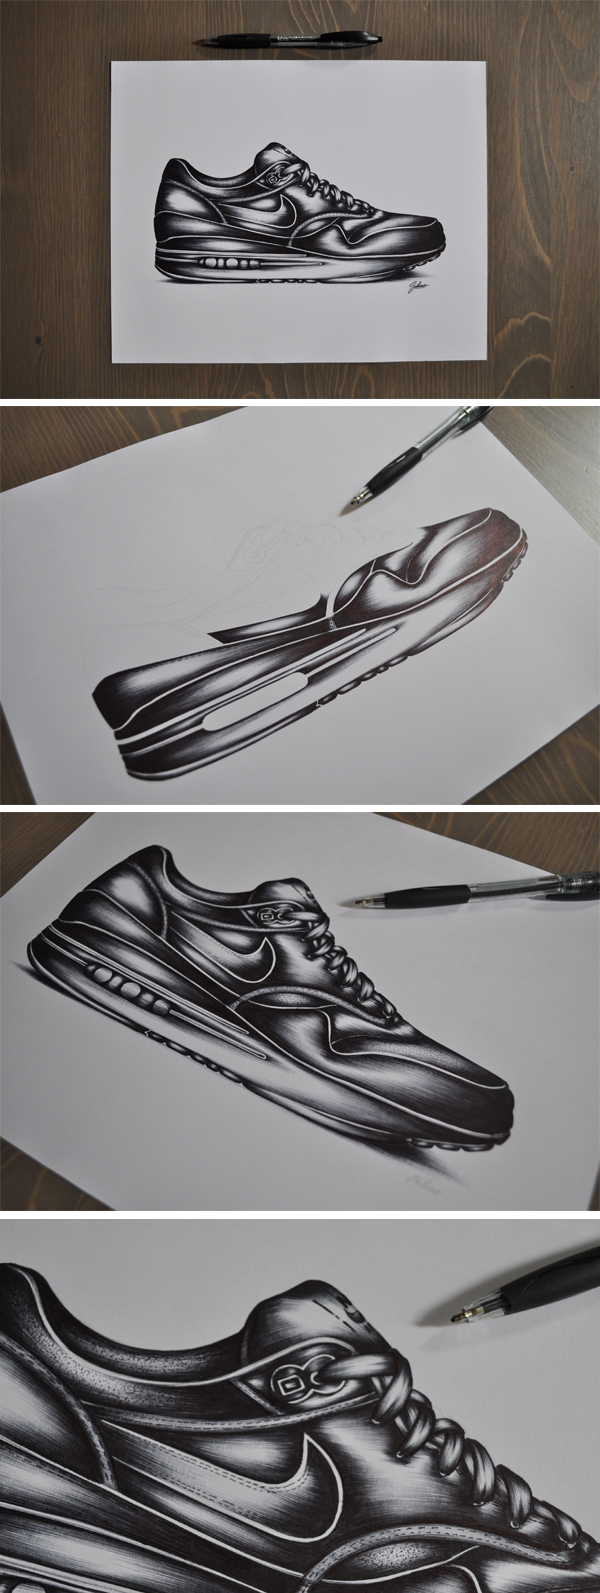 airmax Nike Jeremy SCHIAVO draw shoes sneakers airmaxone Bordeaux stylo bic BIC pen black blackandwhite ilovesneakers footwear footweardesign